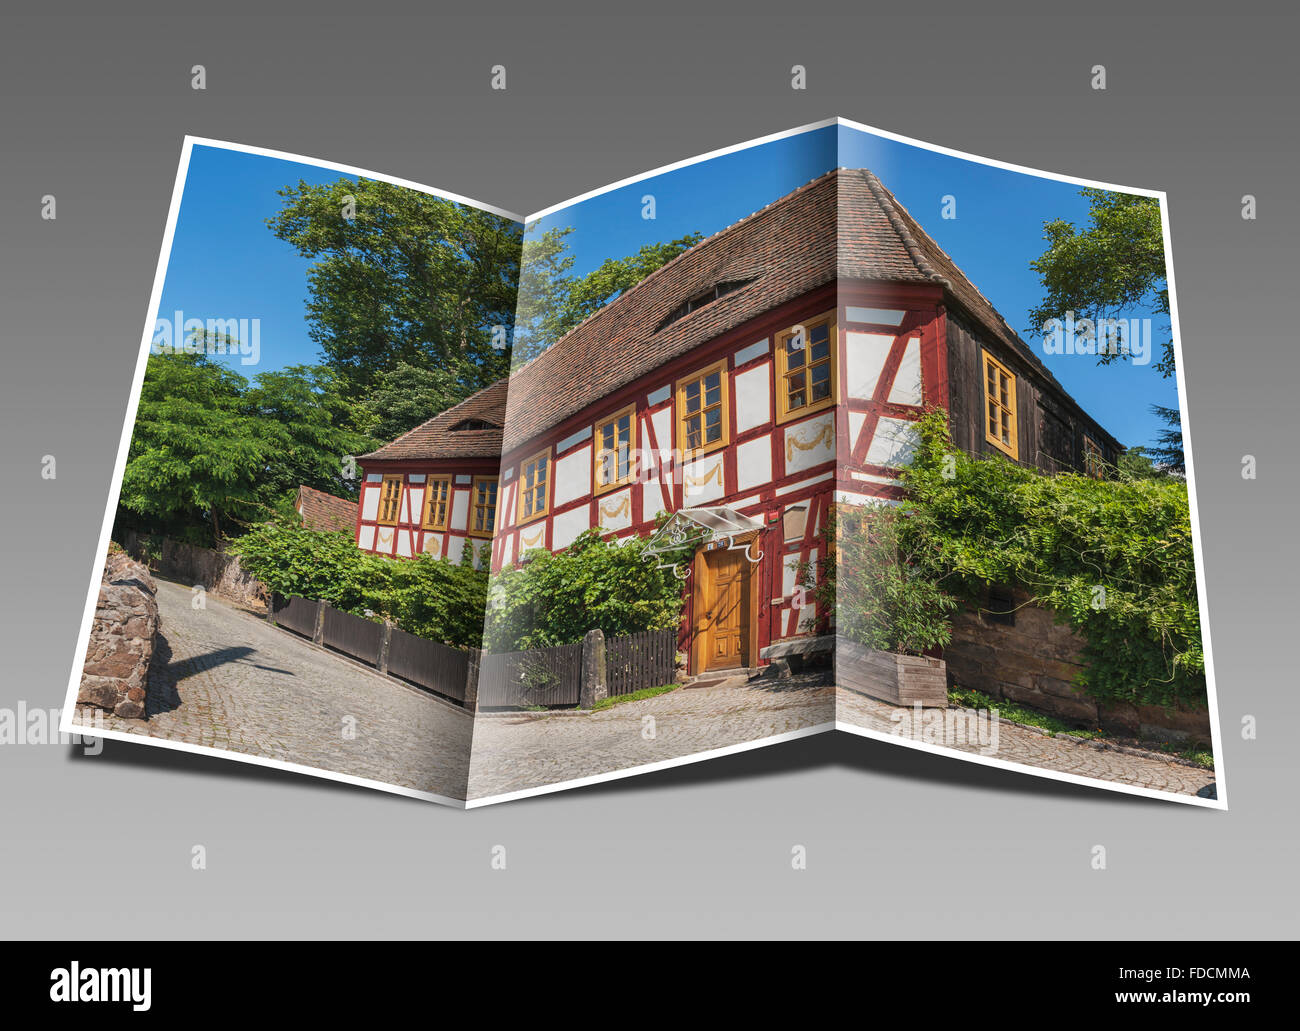 Chambre Lorenz est une maison de vigneron, Radebeul près de Dresde, ville Meissen, Saxe, Allemagne, Europe Banque D'Images